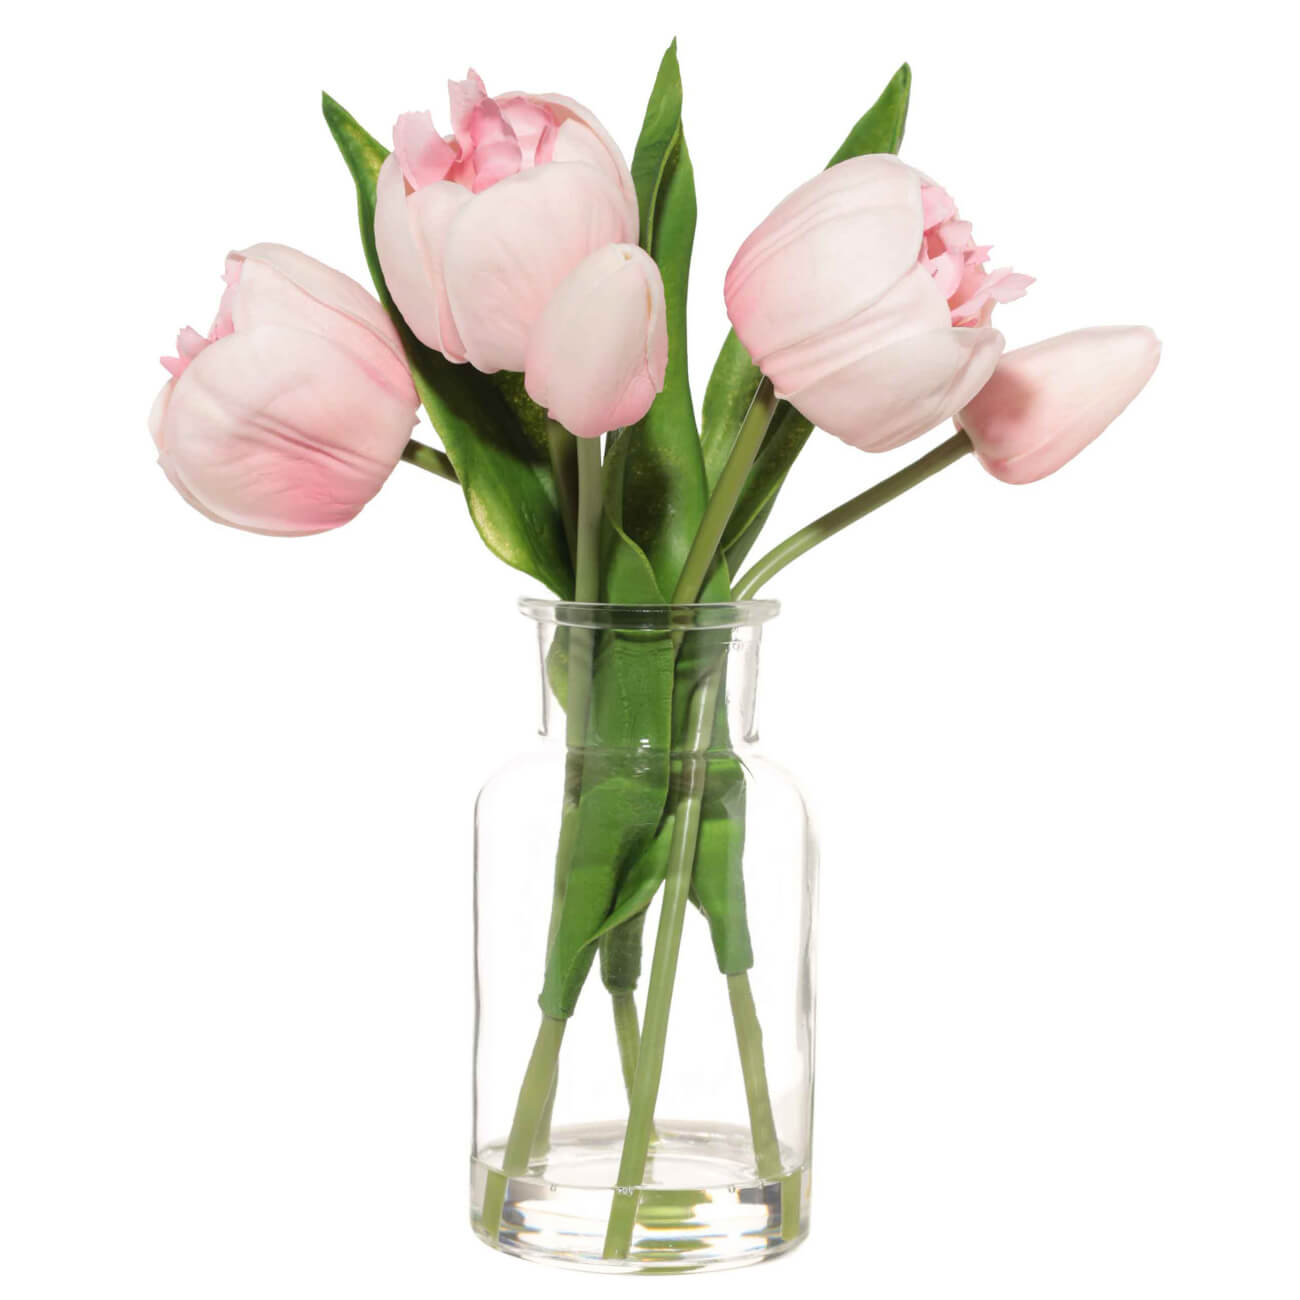 Букет искусственный, 21 см, в вазе, полиуретан/стекло, Розовые тюльпаны, Tulip garden букет сердечный жар